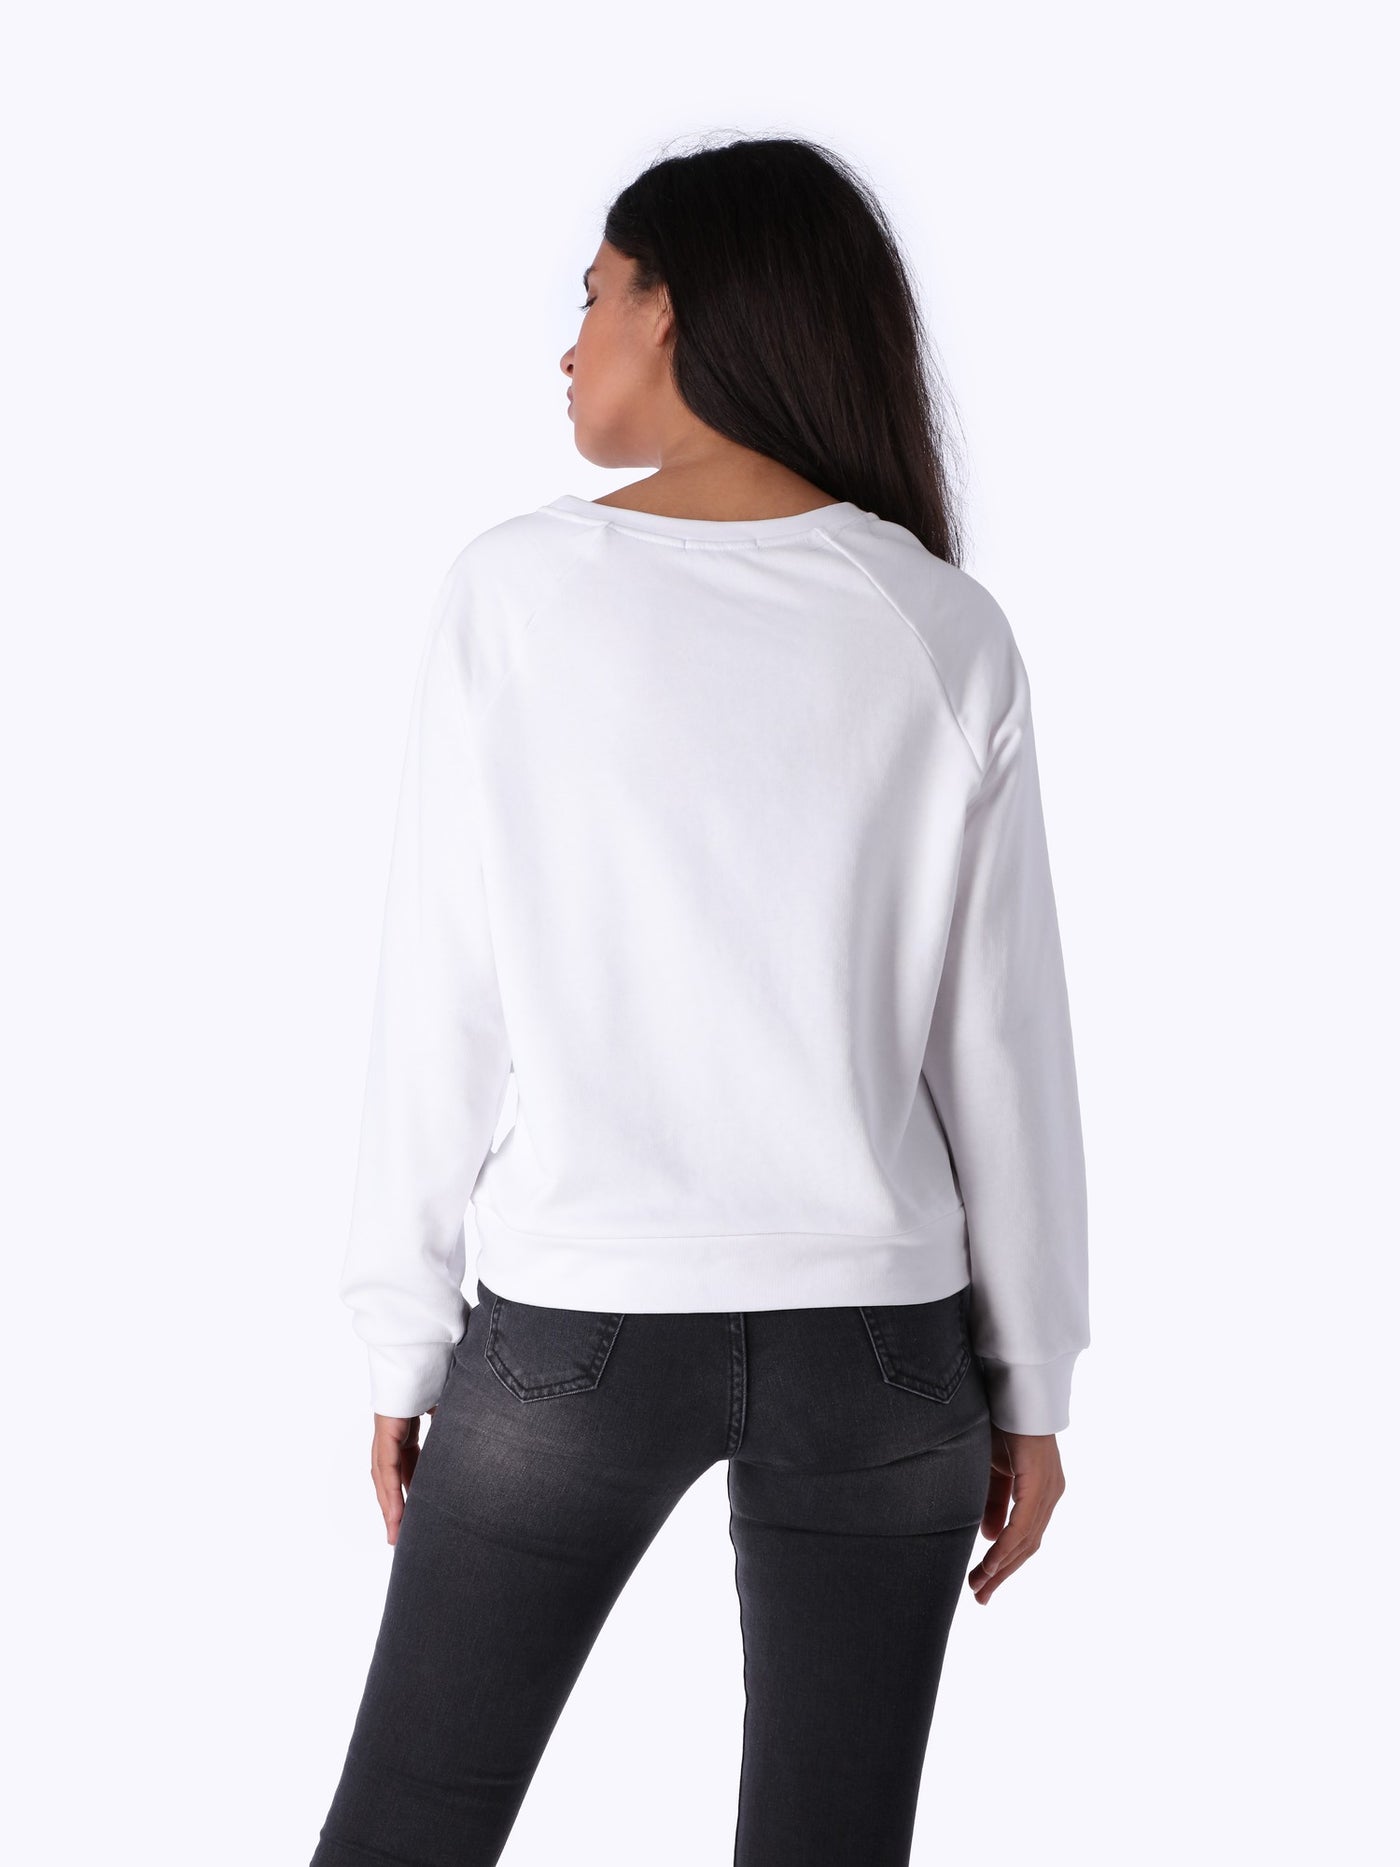 OR Women's Printed Sweatshirt